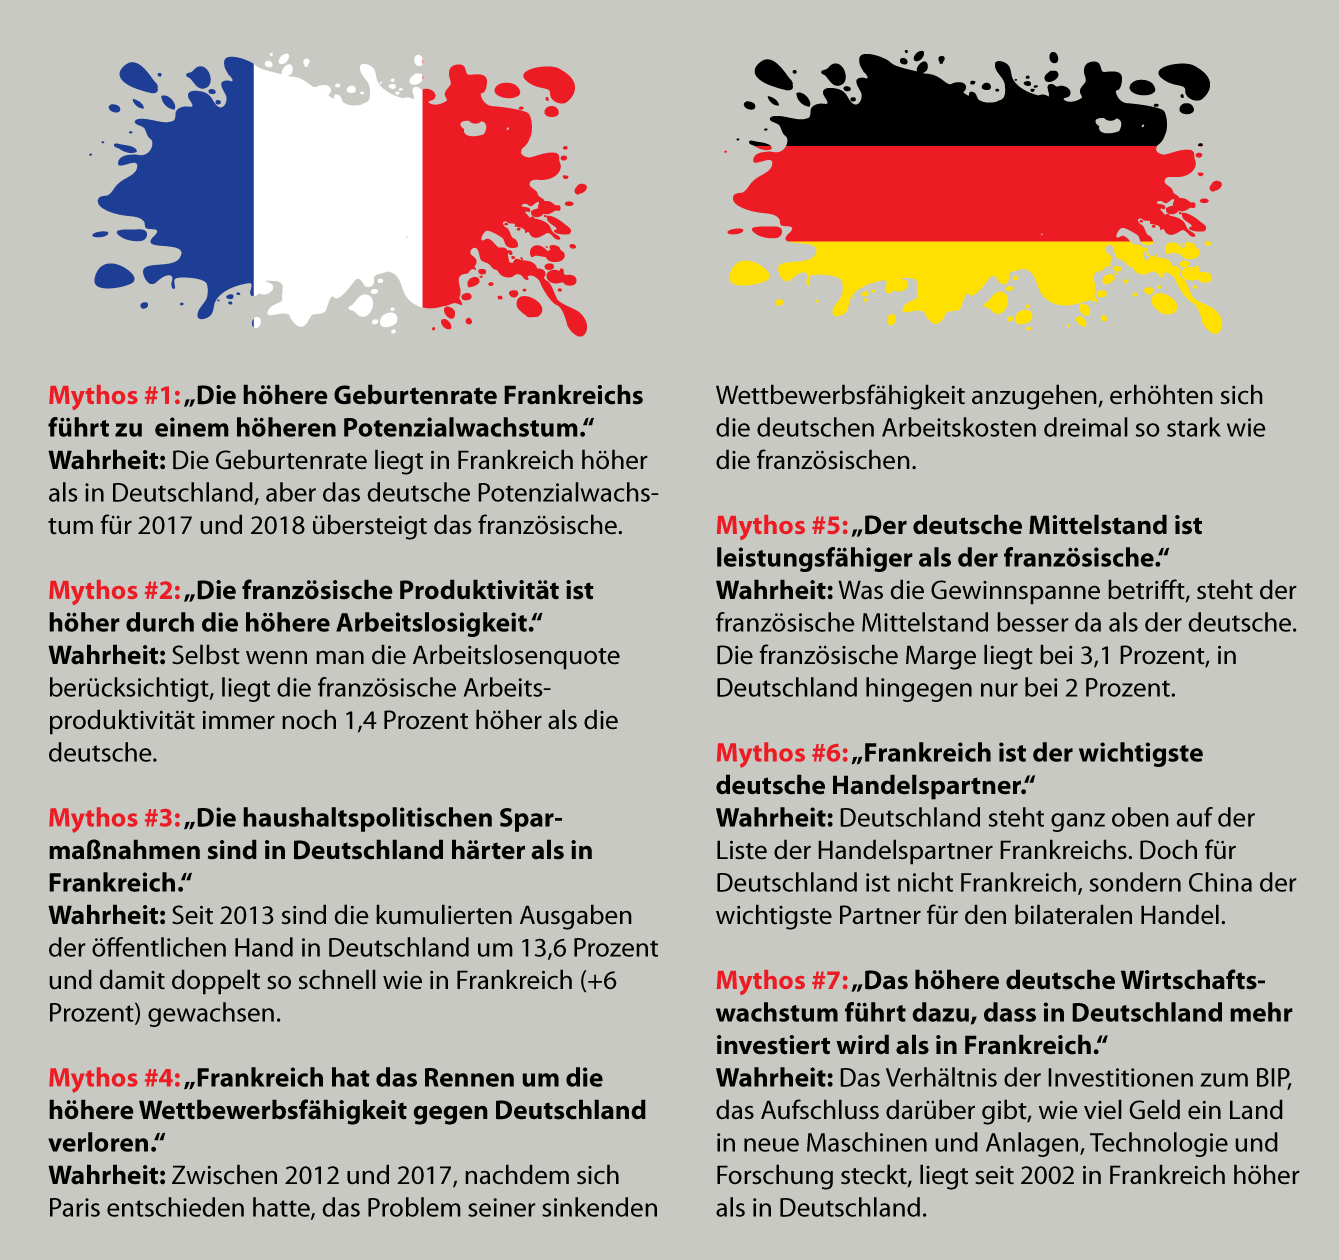 Infografik zu volkswirtschaftlichen Mythen zu Deutschland und Frankreich